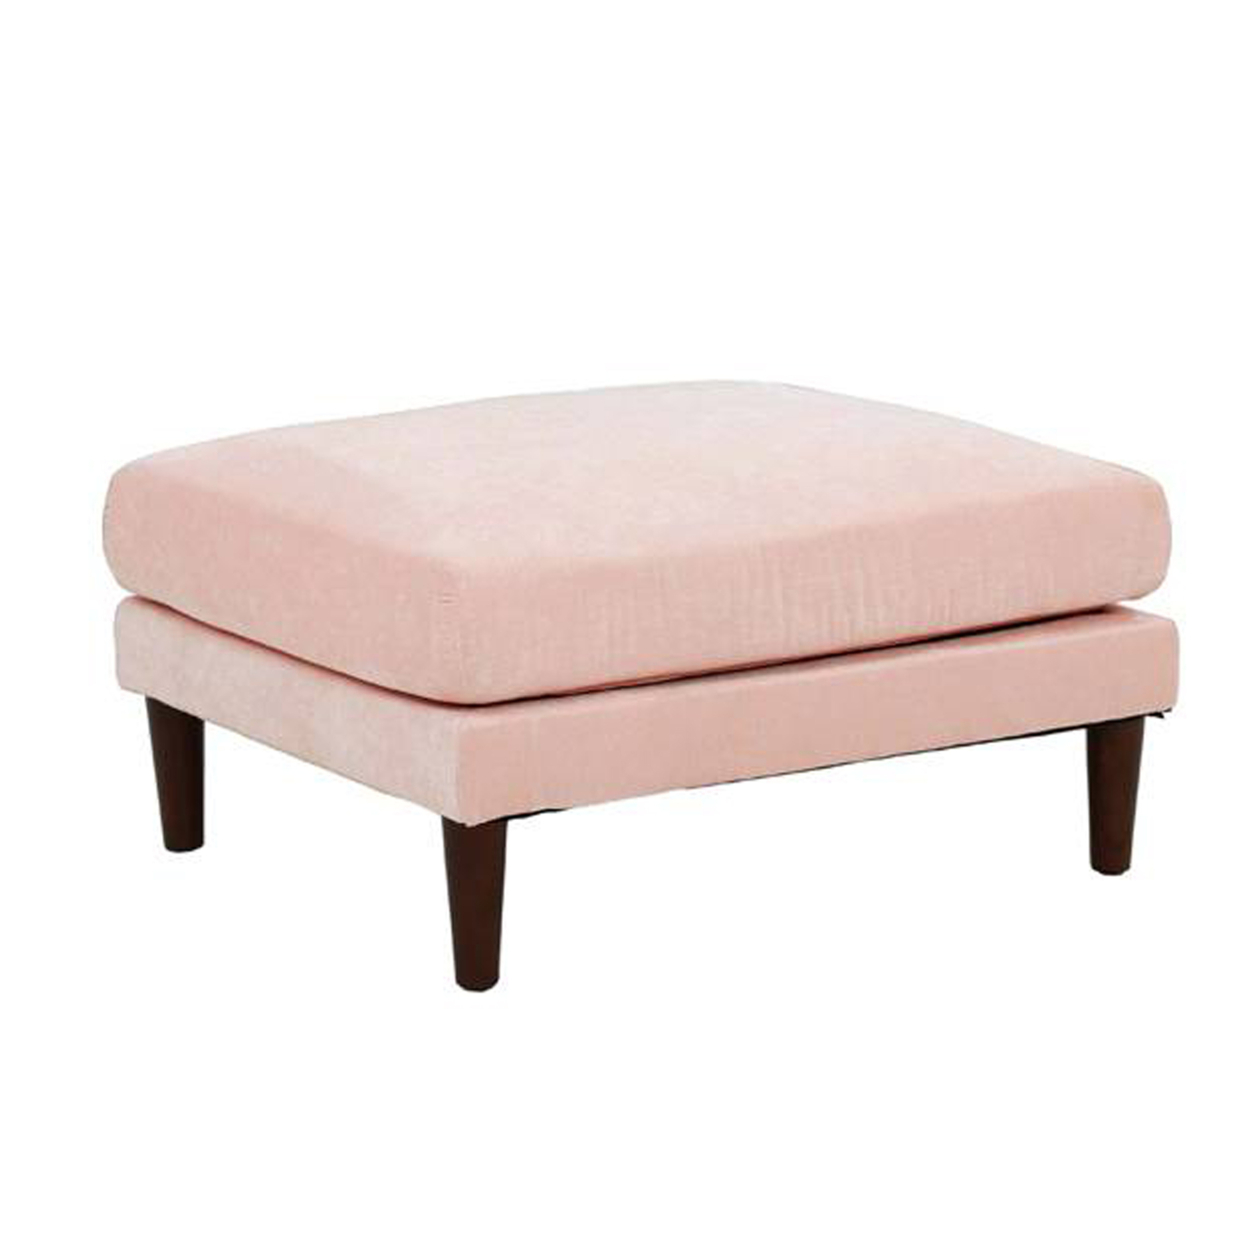 Rio 32 Inch Modular Ottoman, Box Cushion Seat, Wood Legs, Blush Pink- Saltoro Sherpi